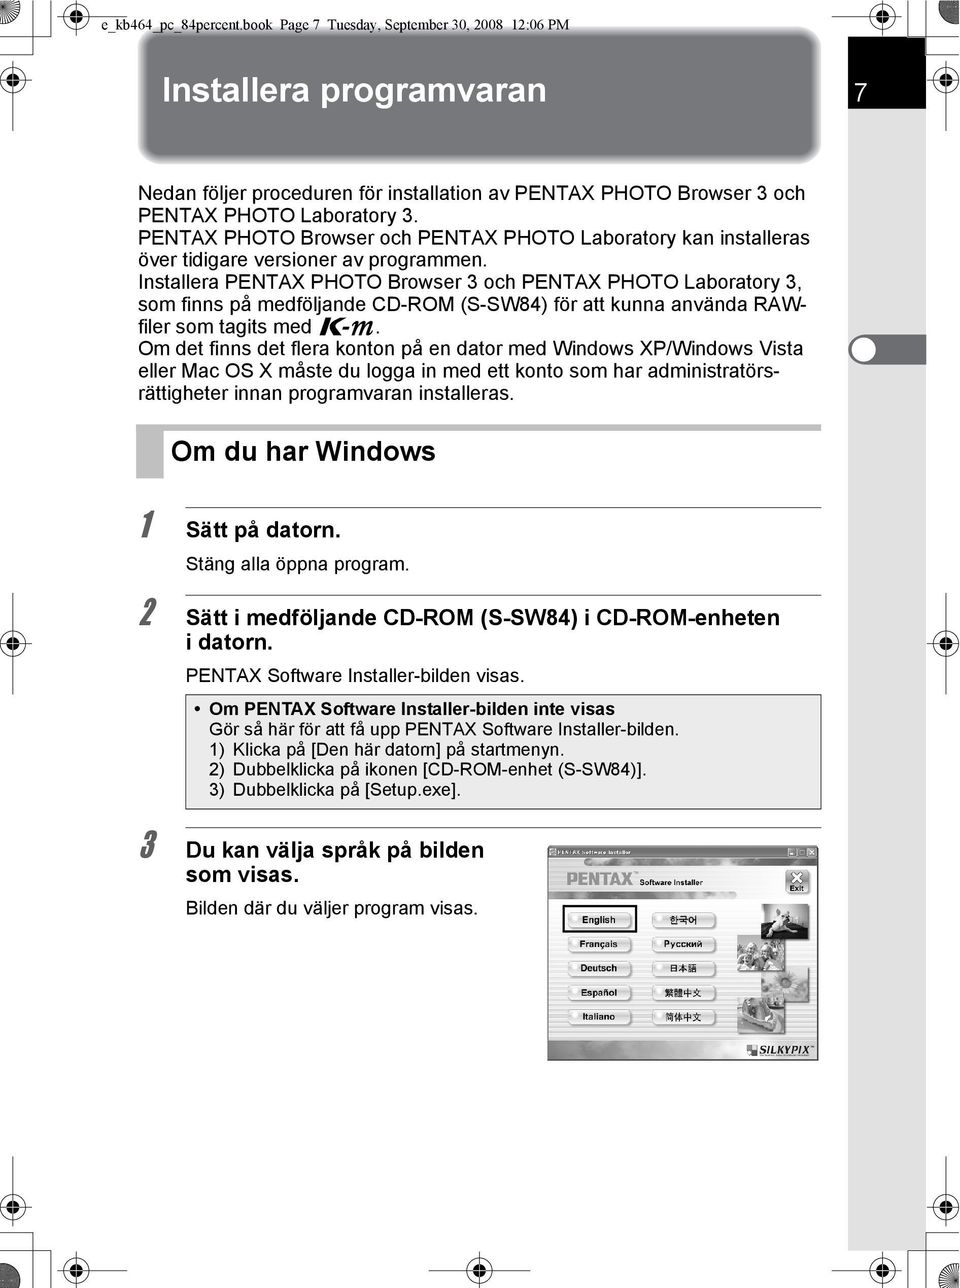 Installera PENTAX PHOTO Browser 3 och PENTAX PHOTO Laboratory 3, som finns på medföljande CD-ROM (S-SW84) för att kunna använda RAWfiler som tagits med e.